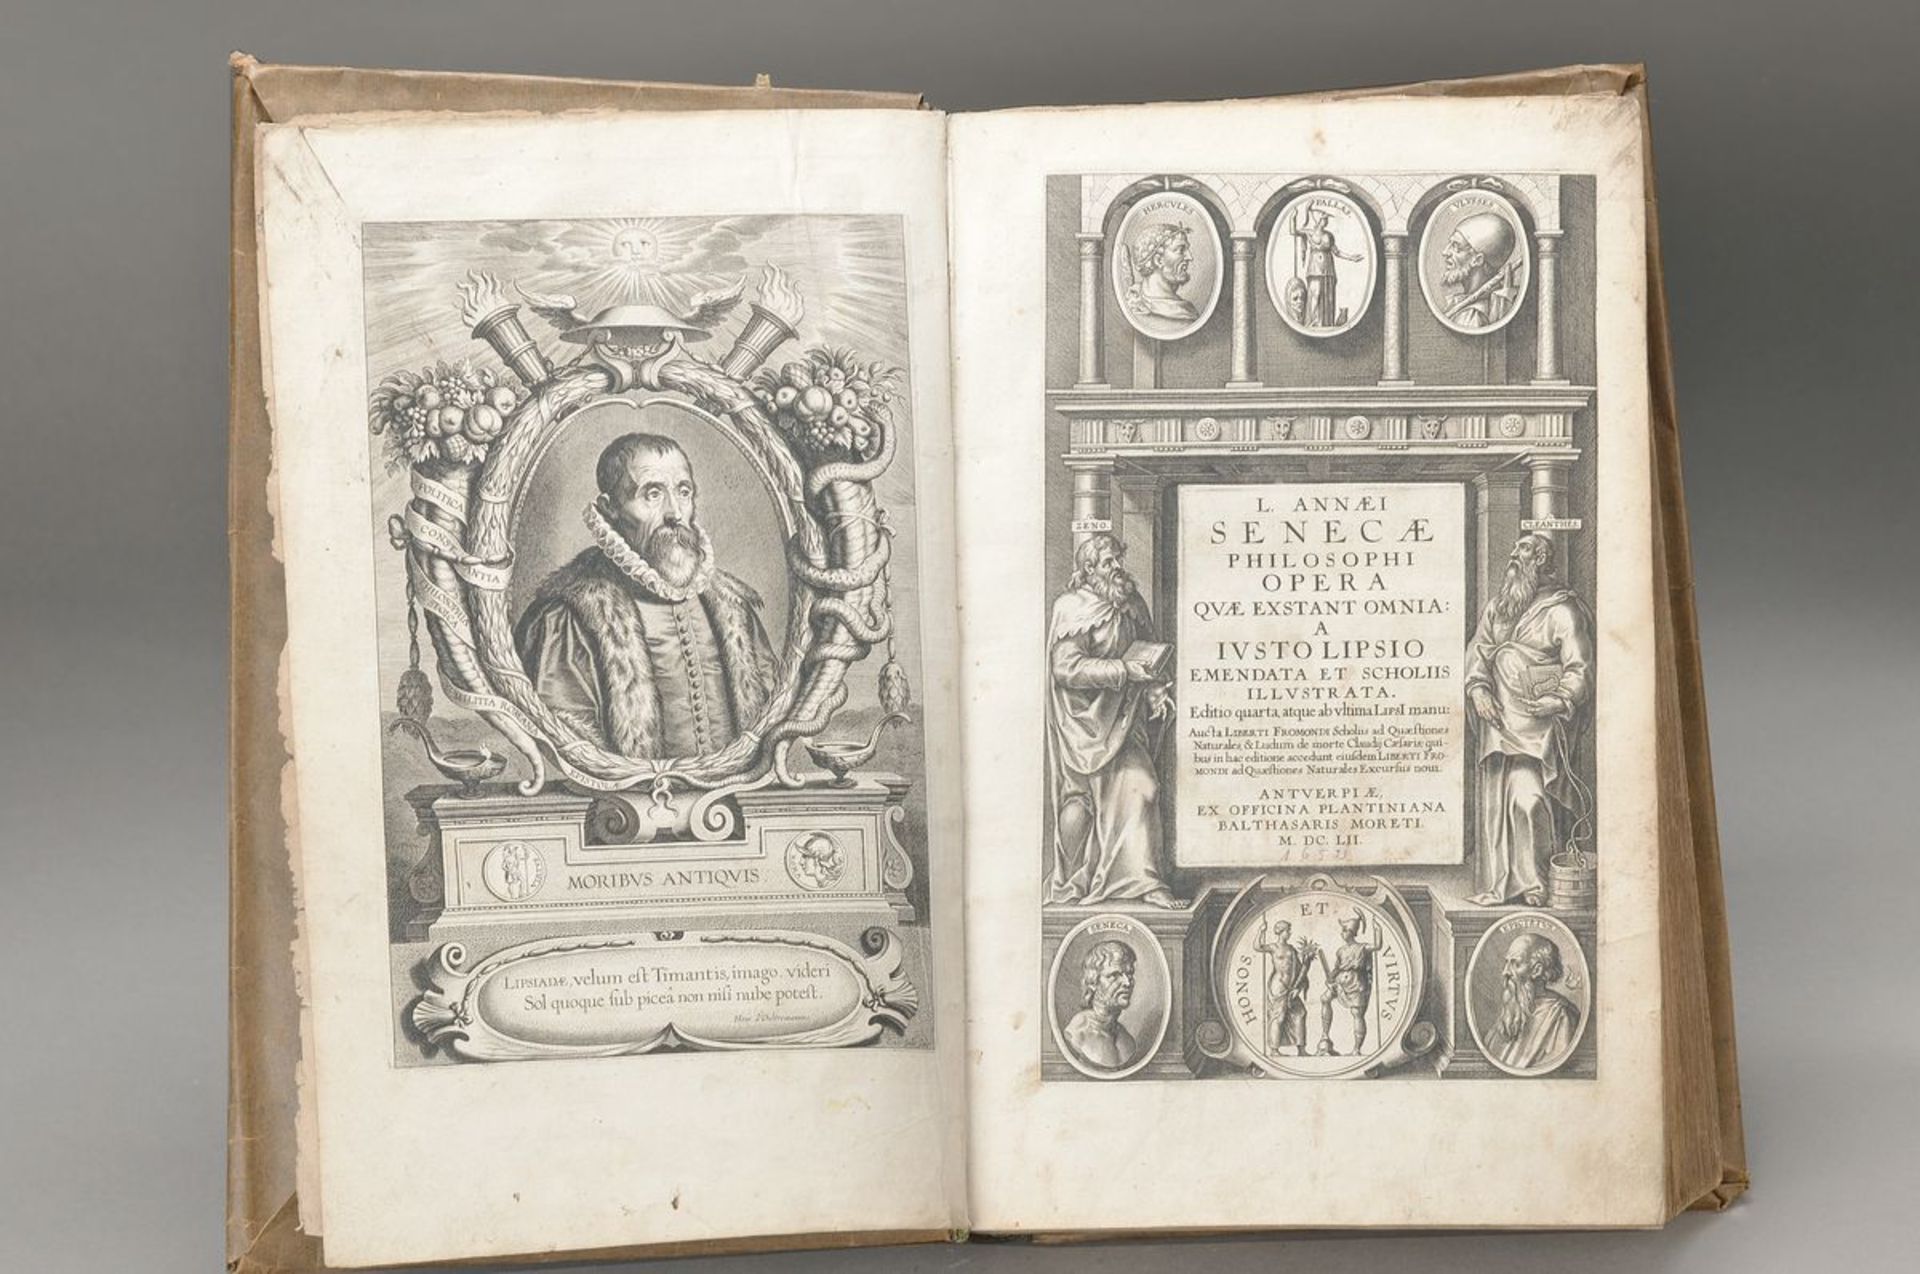 L. Annaei: Seneca philosophi opera quae exstant omnia, gedruckt in Antwerpen Balthasar Moreti, 1652,